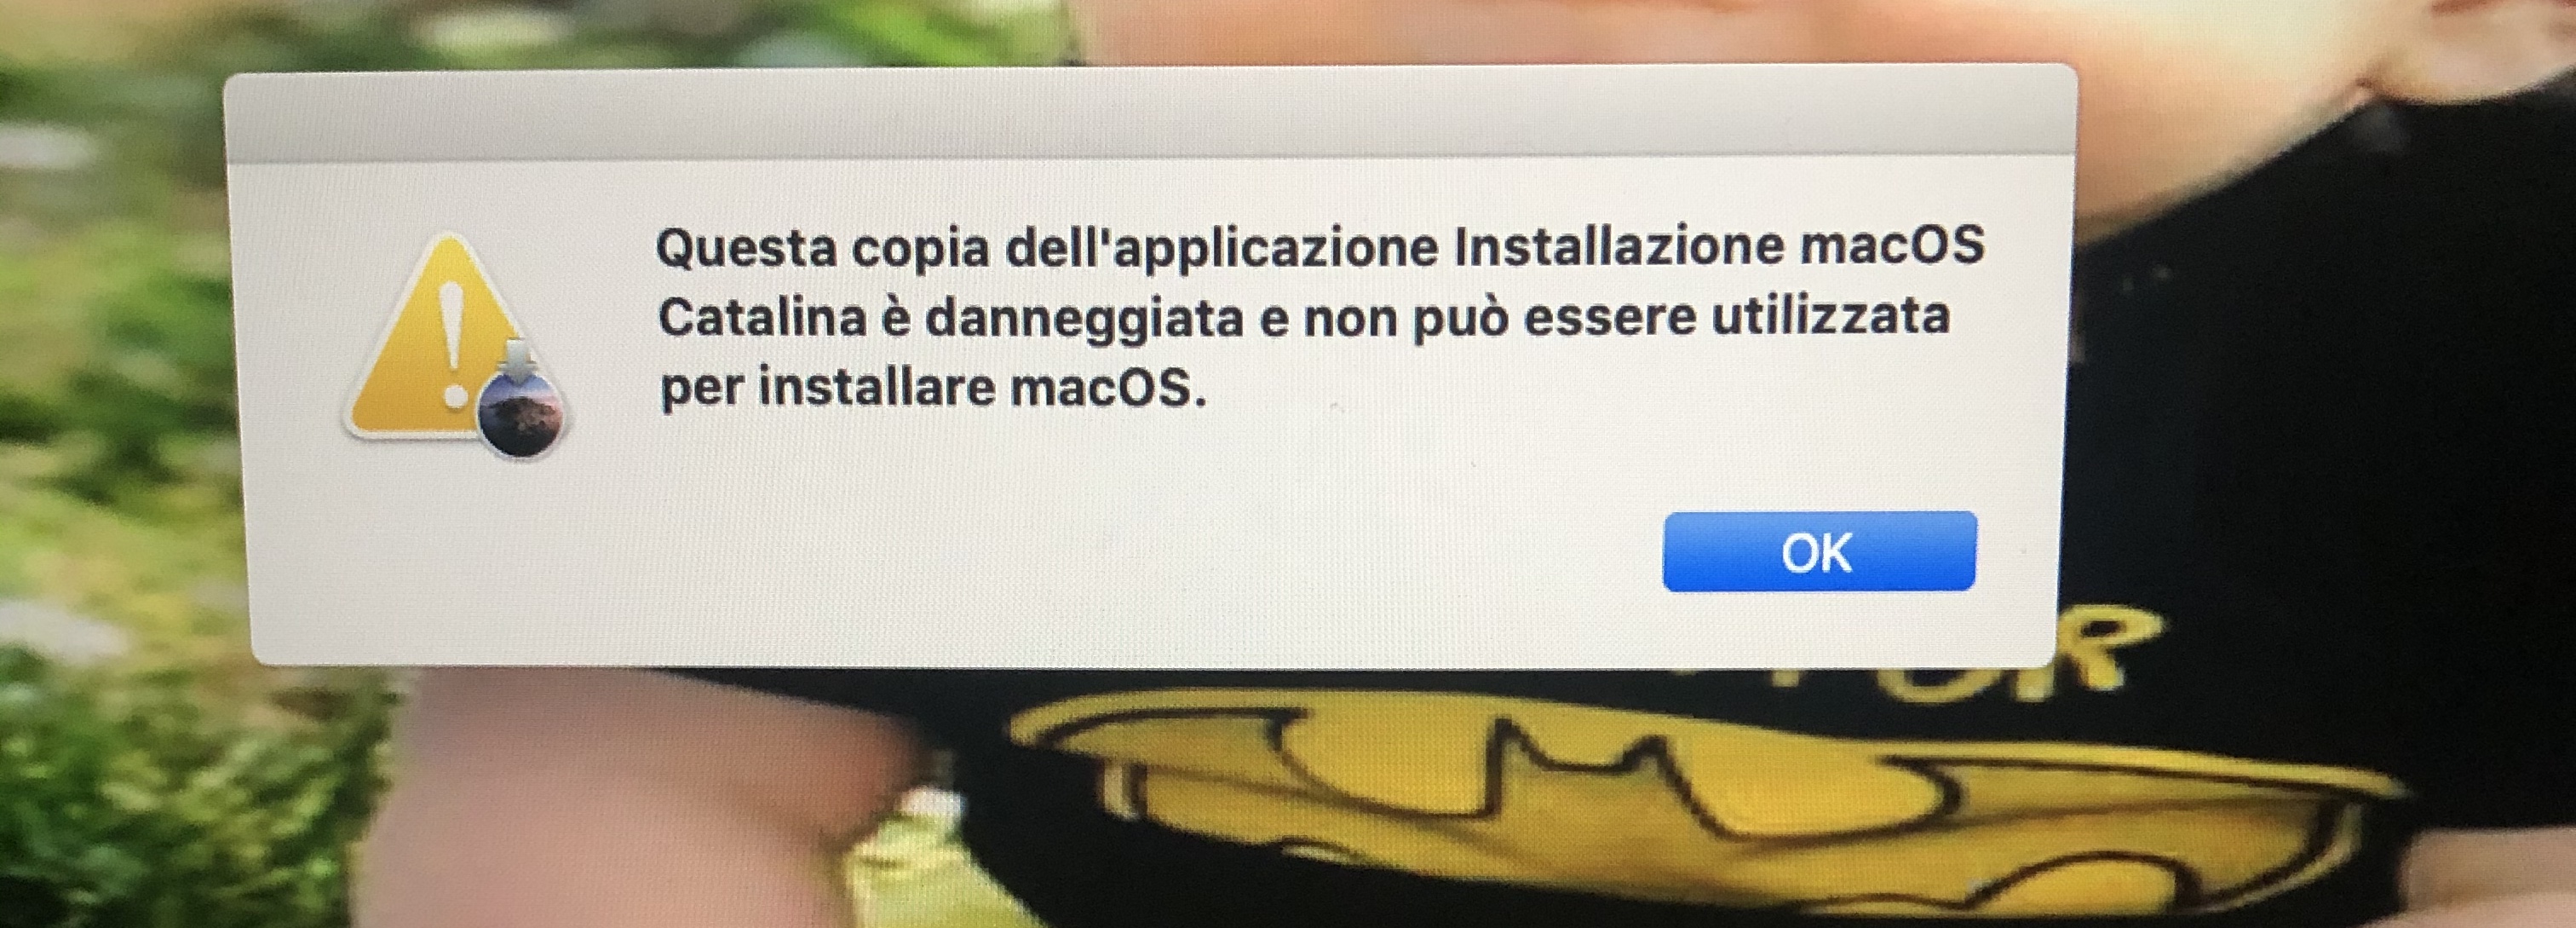 Mac os x software update corrupted